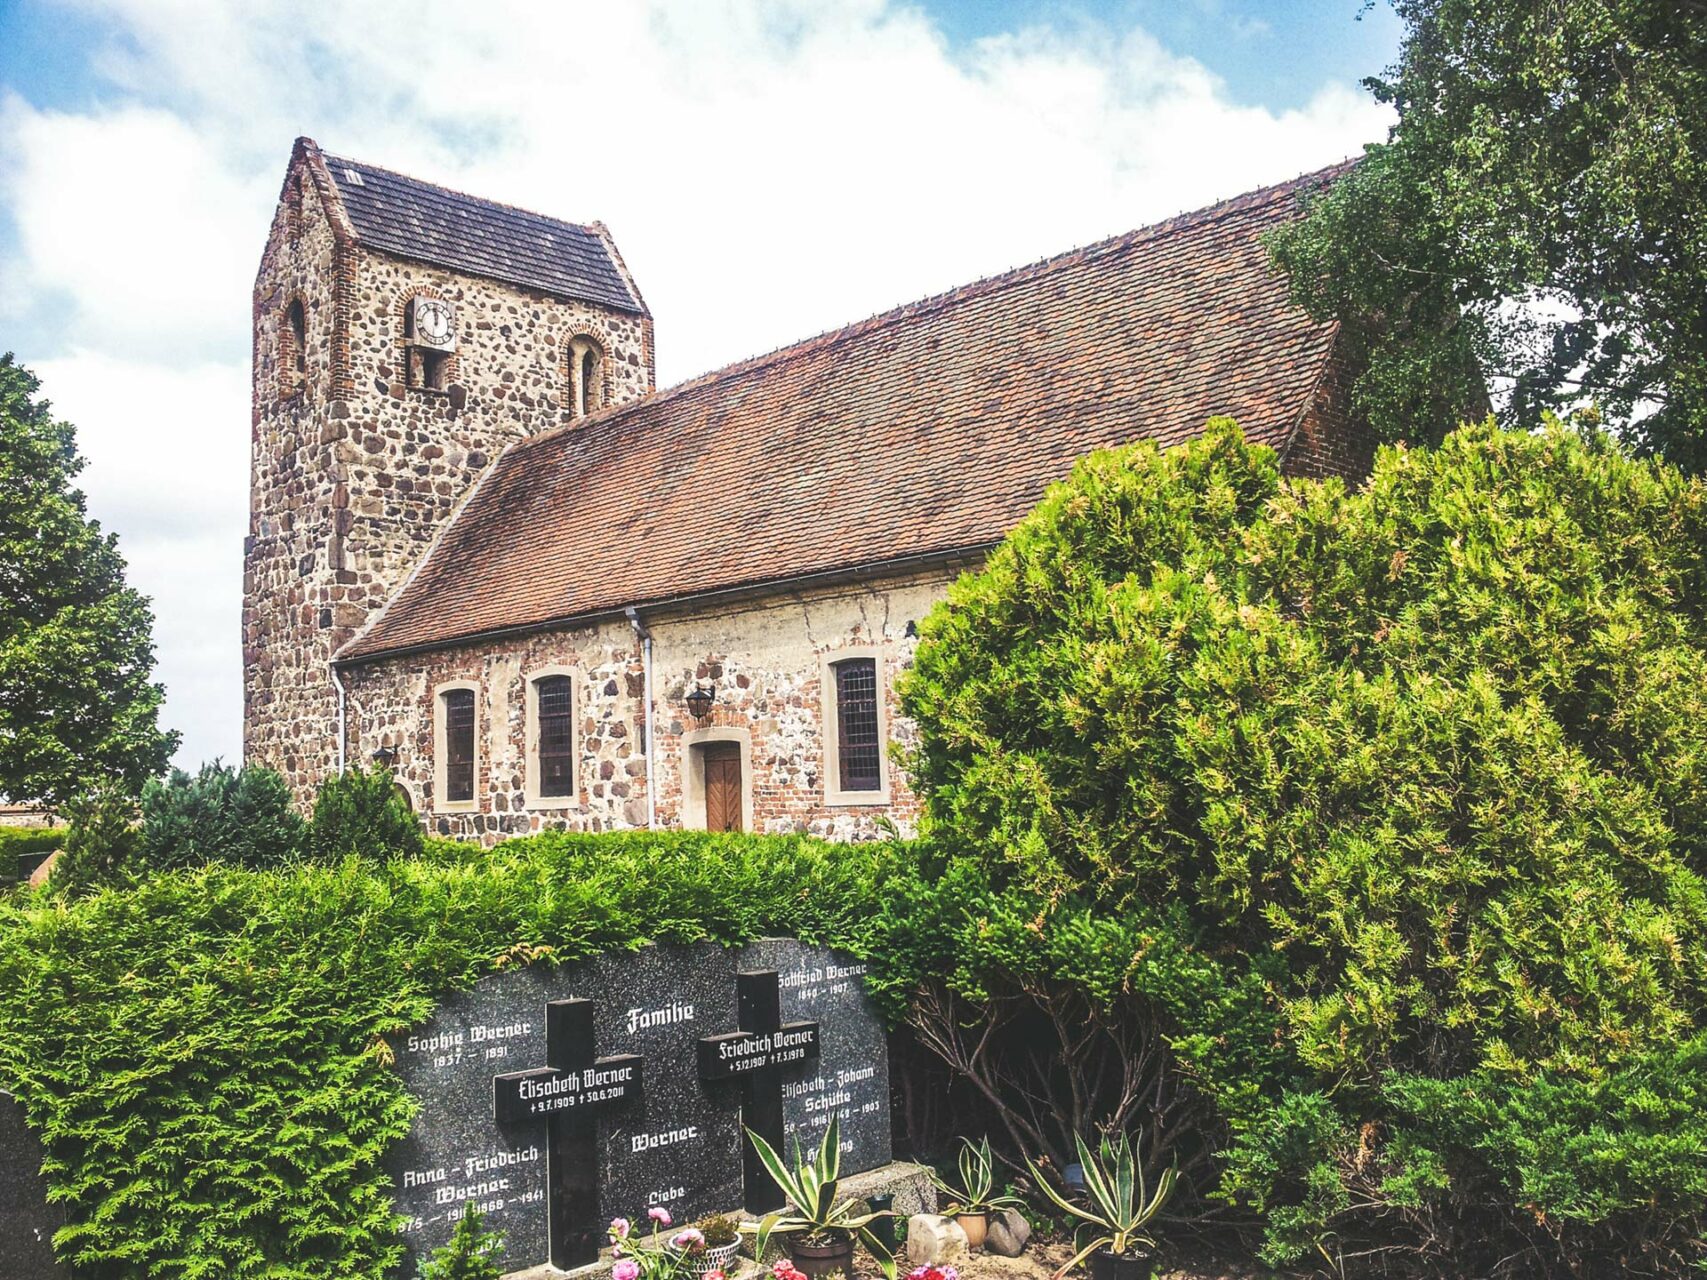 Die Kirche von Miltern aus dem 12. Jahrhundert ist noch original erhalten und im typischen Feldsteinbau errichtet. Die Chronik berichtet von einer Bruderschaft, die sich hier um Pilger, Kranke und Fremdlinge kümmerte.